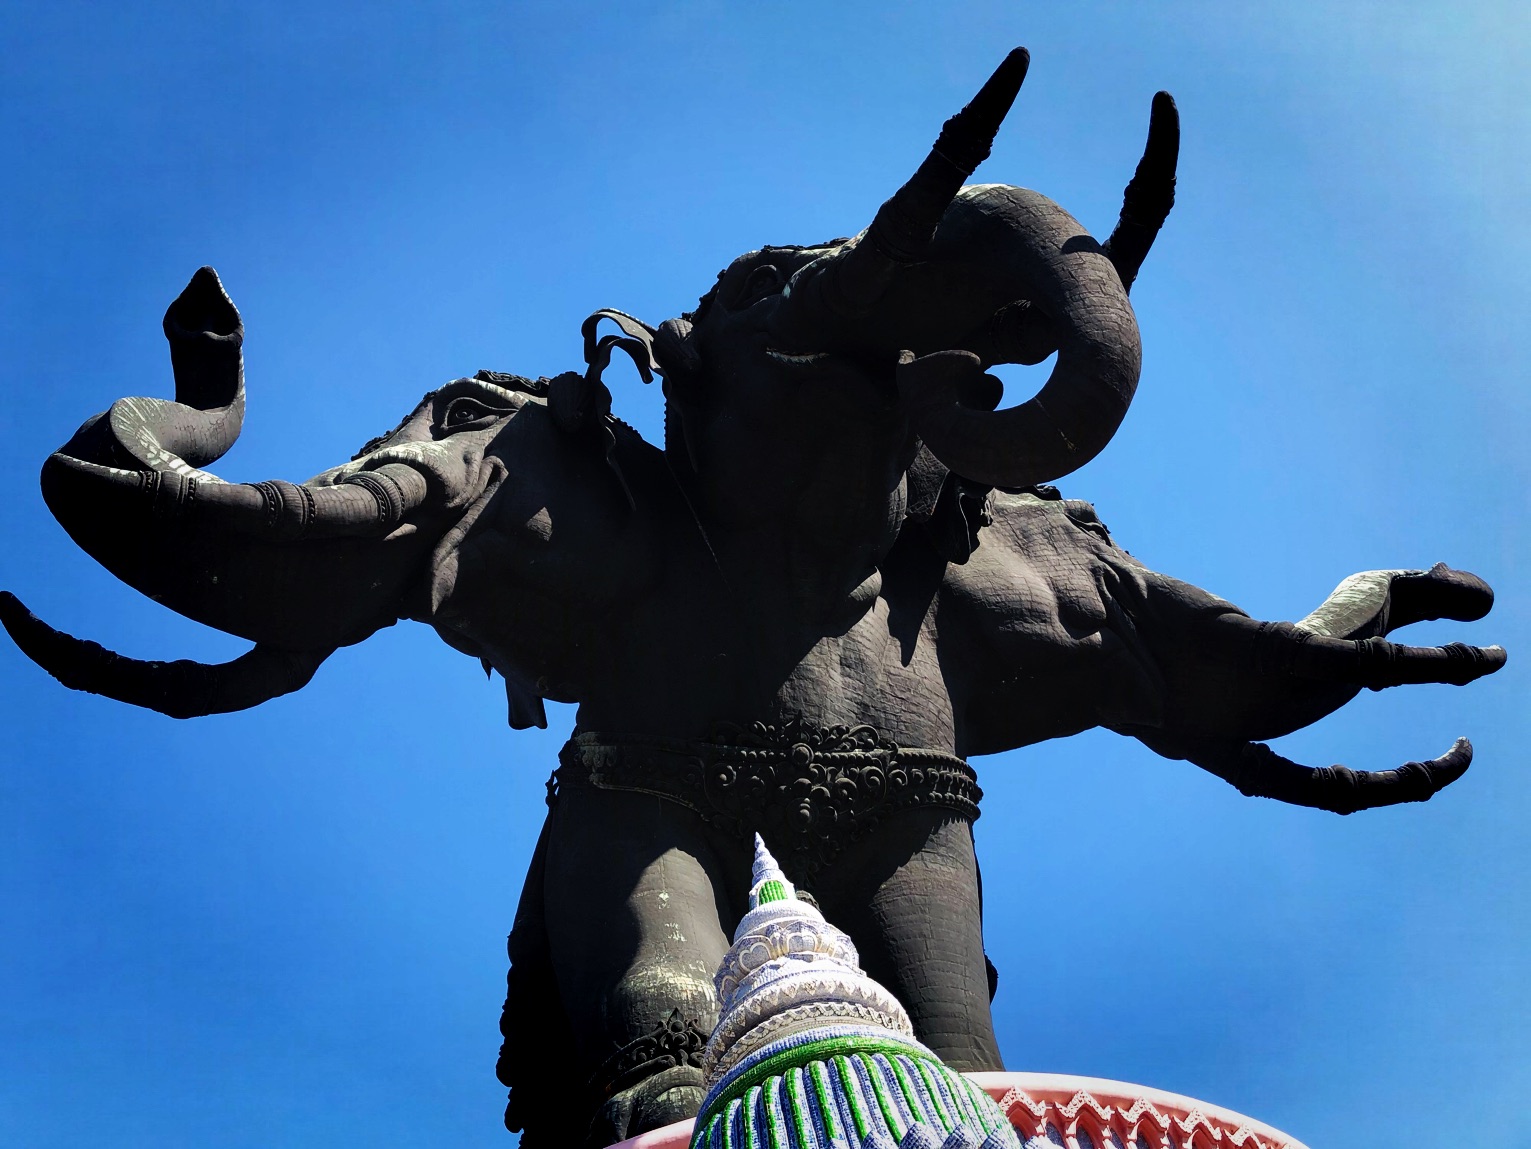 四面佛博物馆  它是四面大象的浮雕像,四面佛博物馆。它是北榄府重要的和杰出的旅游景点之一。位于素坤逸